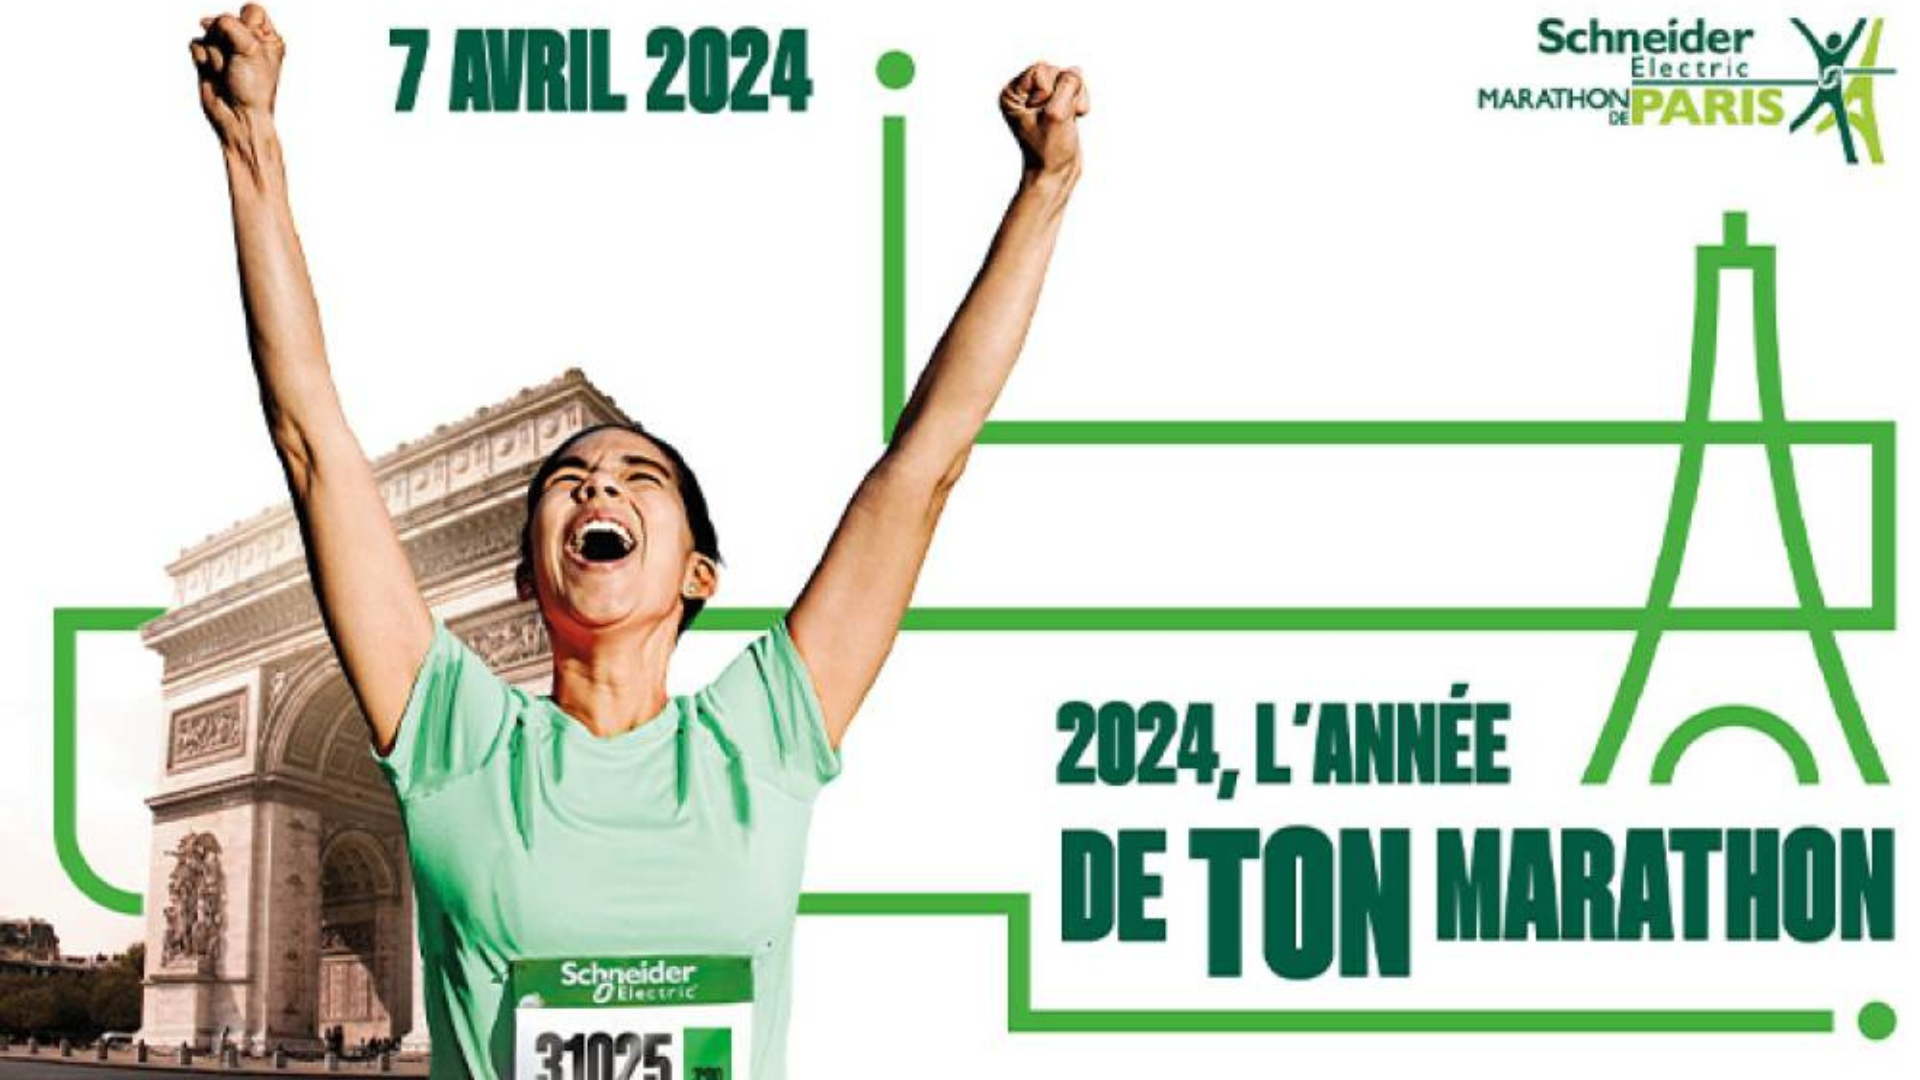 Les inscriptions sont ouvertes pour le Marathon de Paris 2024 ! CultActu